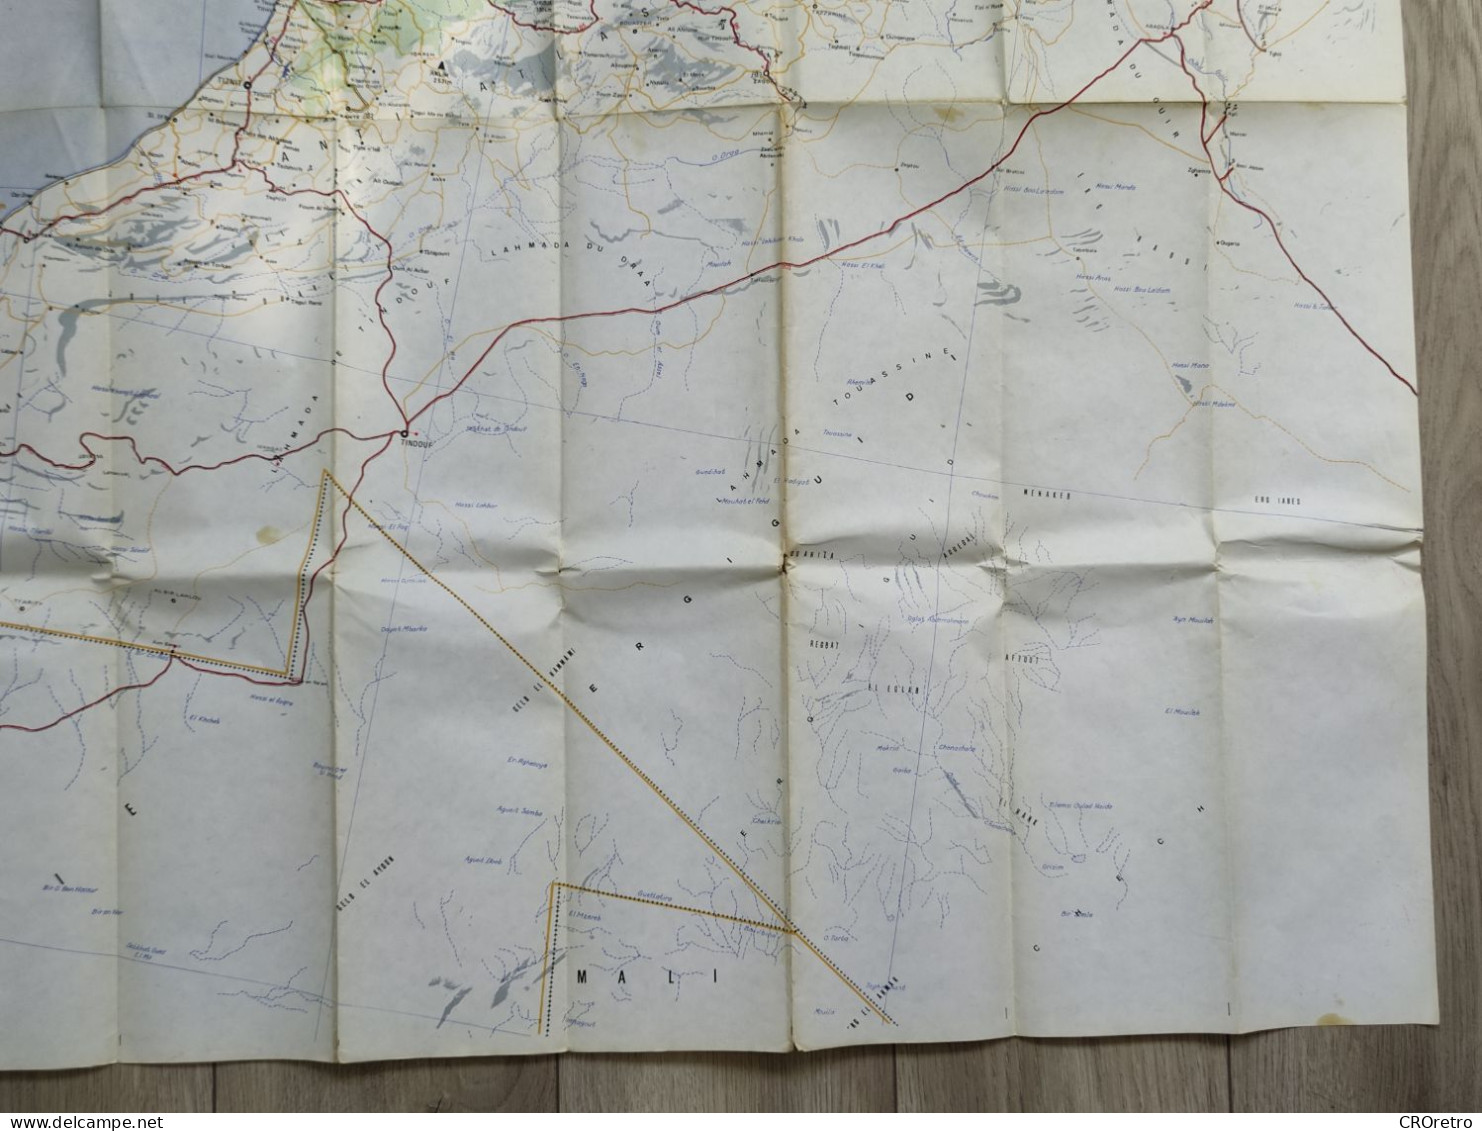 MOROCCO / MAROC, vintage road map, autokarte, 90×115 cm